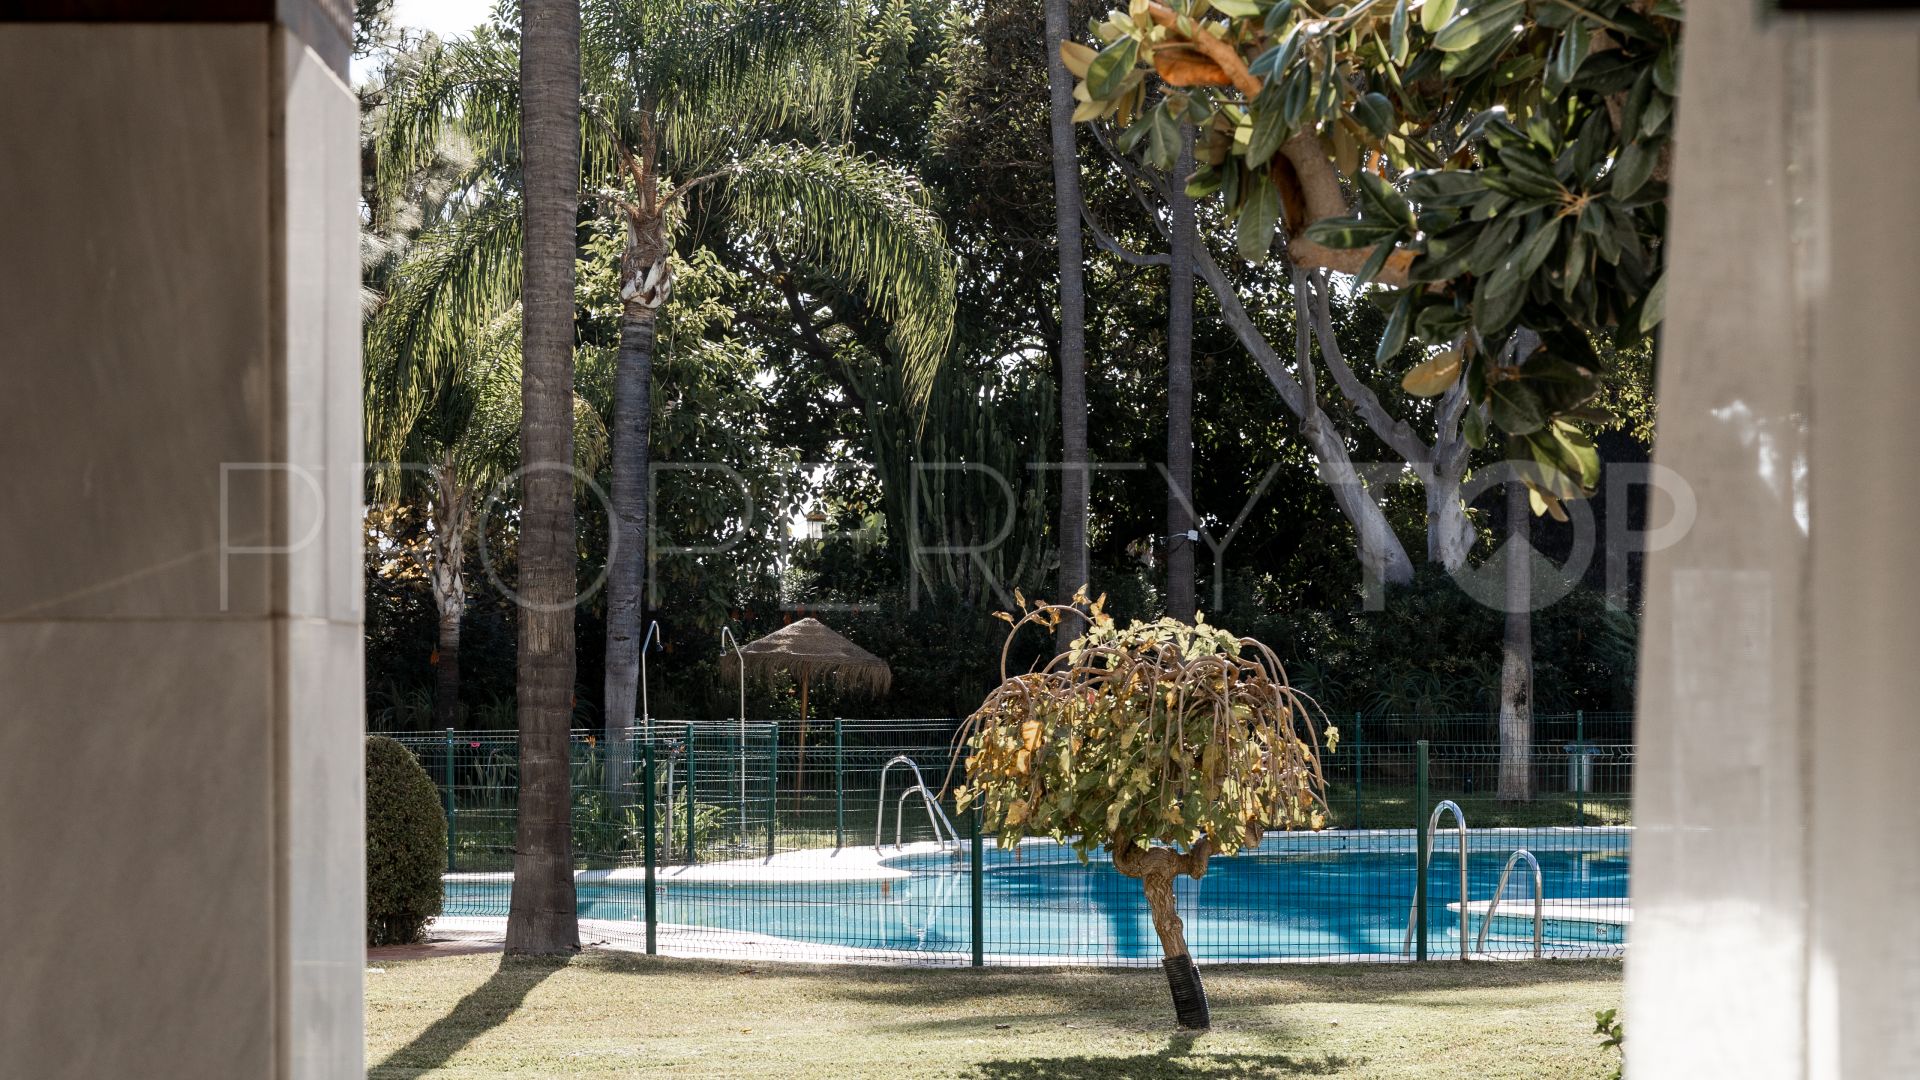 6 bedrooms duplex in Marbella - Puerto Banus for sale